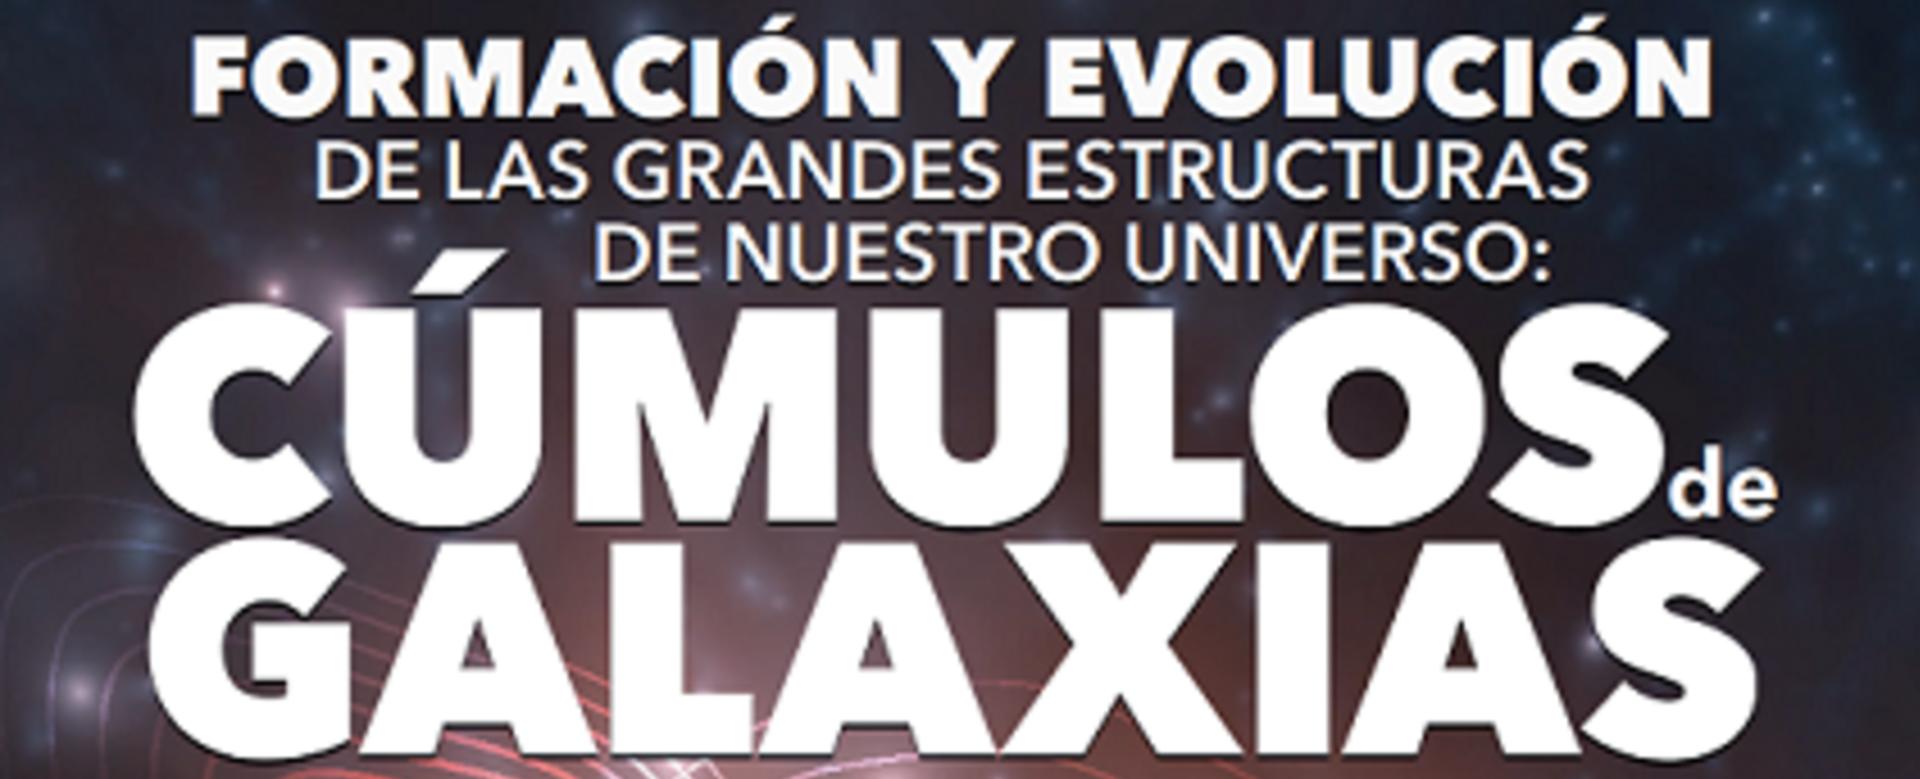 Cartel de la charla “Formación y evolución de las grandes estructuras de nuestro Universo: los cúmulos de galaxias”